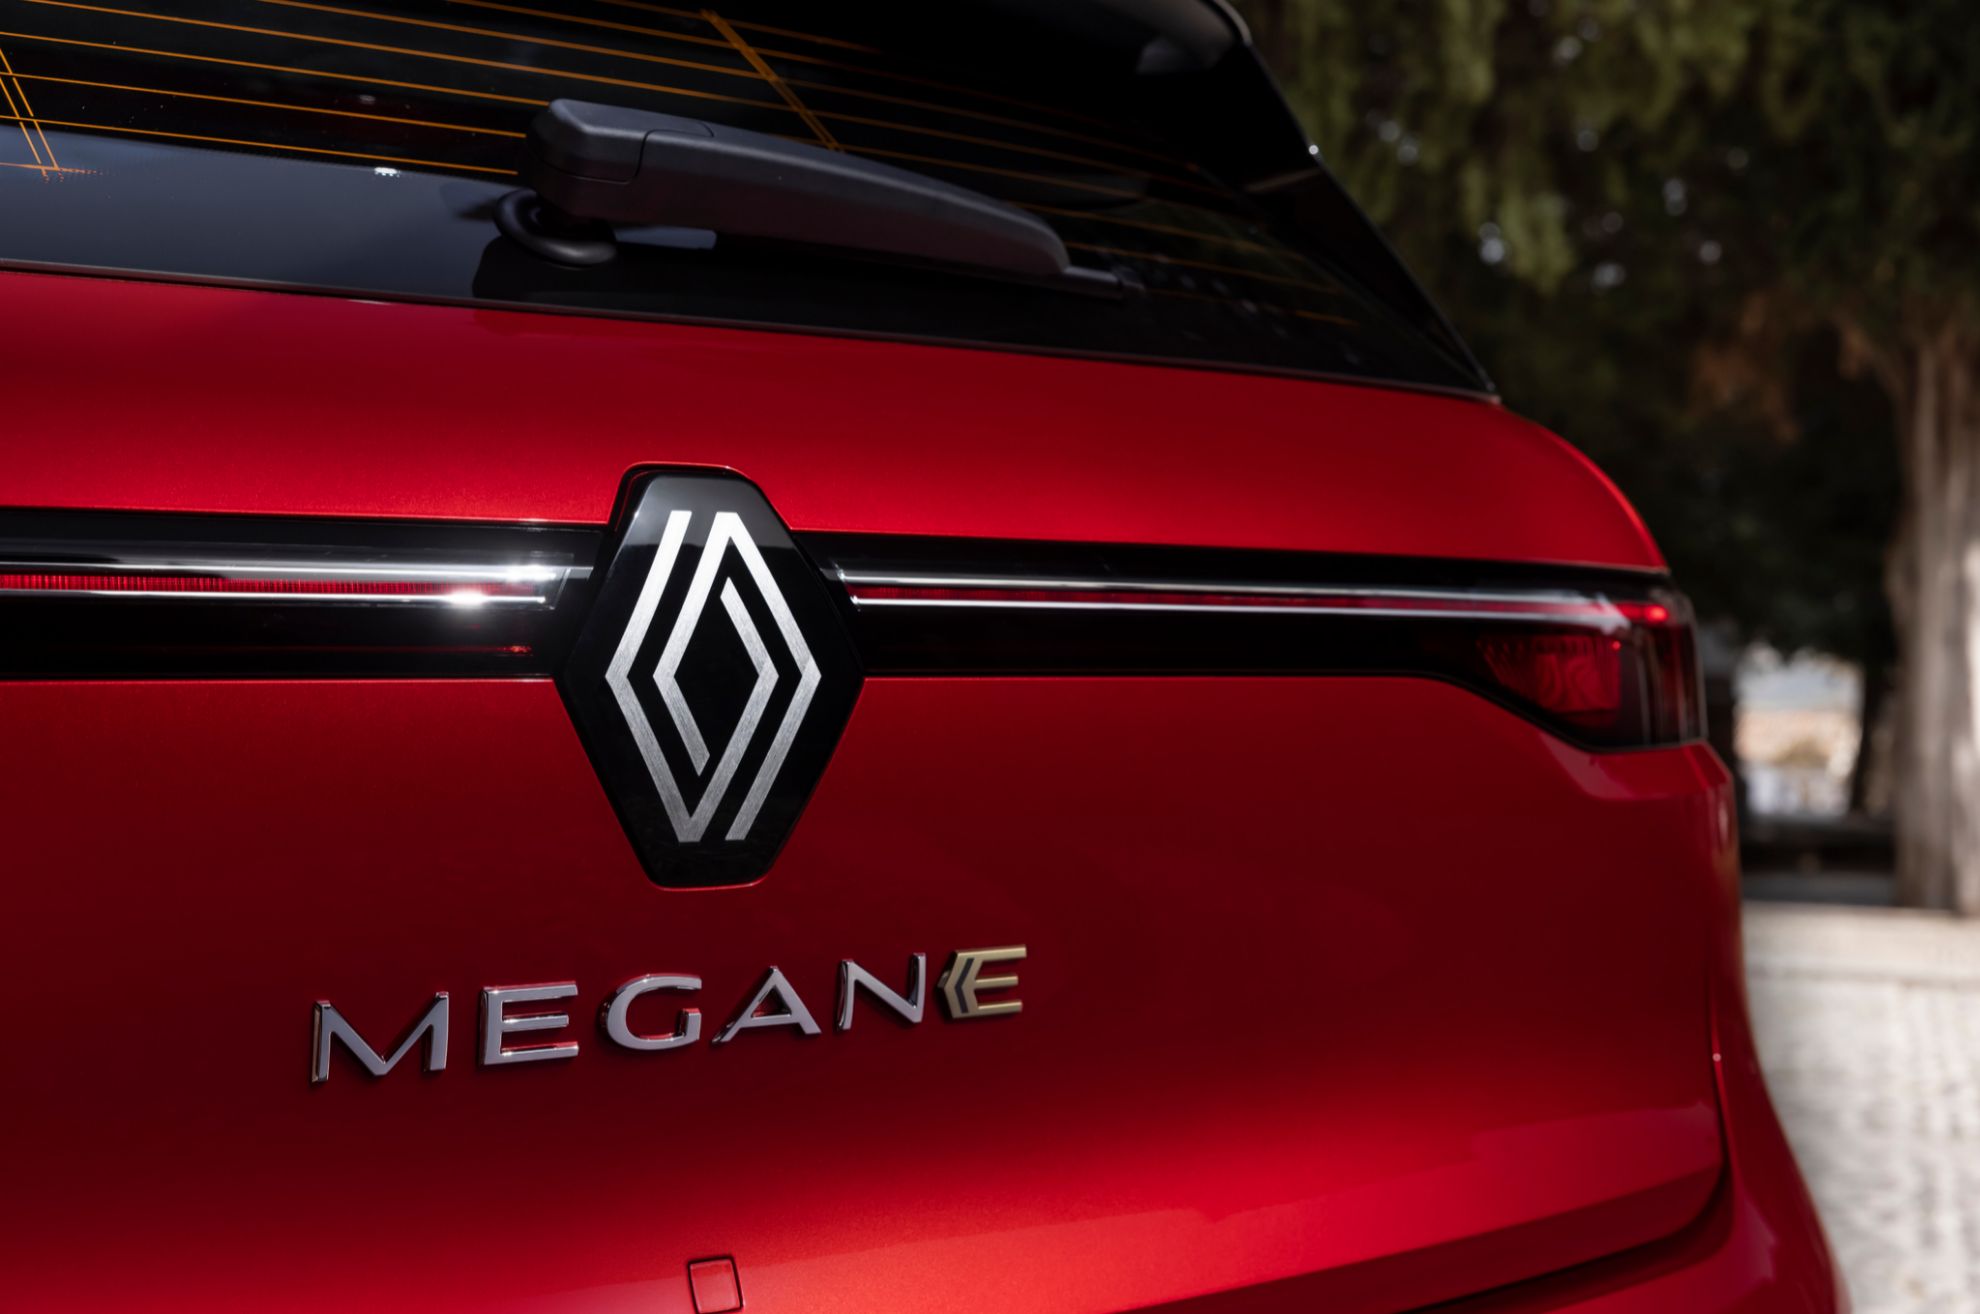 Renault Megane E-Tech - megane electrico - gama espaola - precios - baterias - cargas